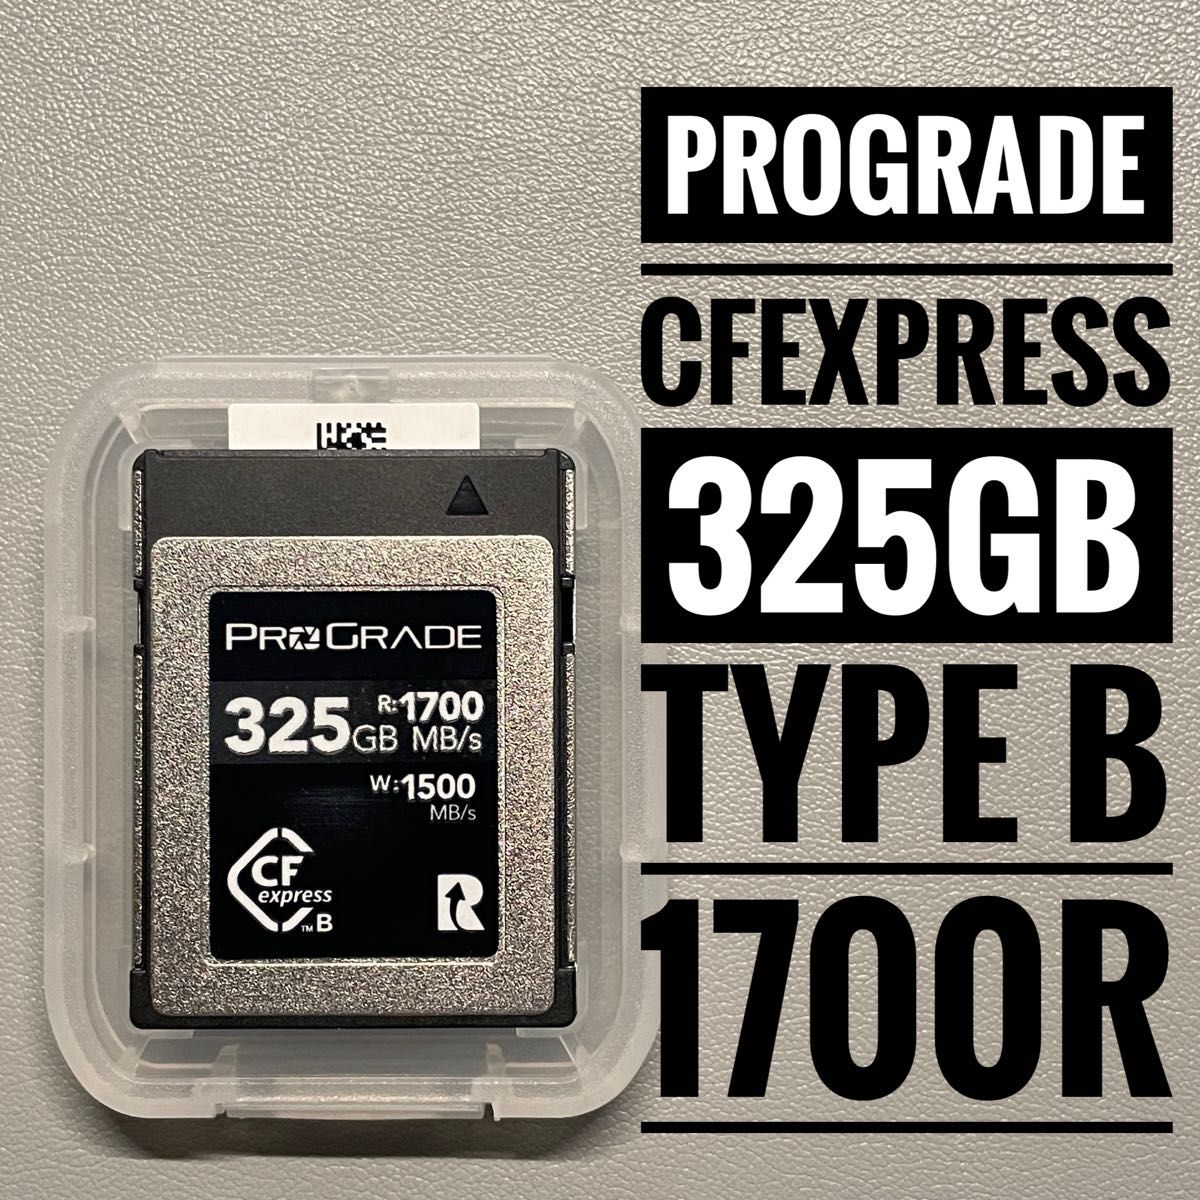 プログレード 325GB Cfexpress Type B Cobalt 1700R PCサプライ